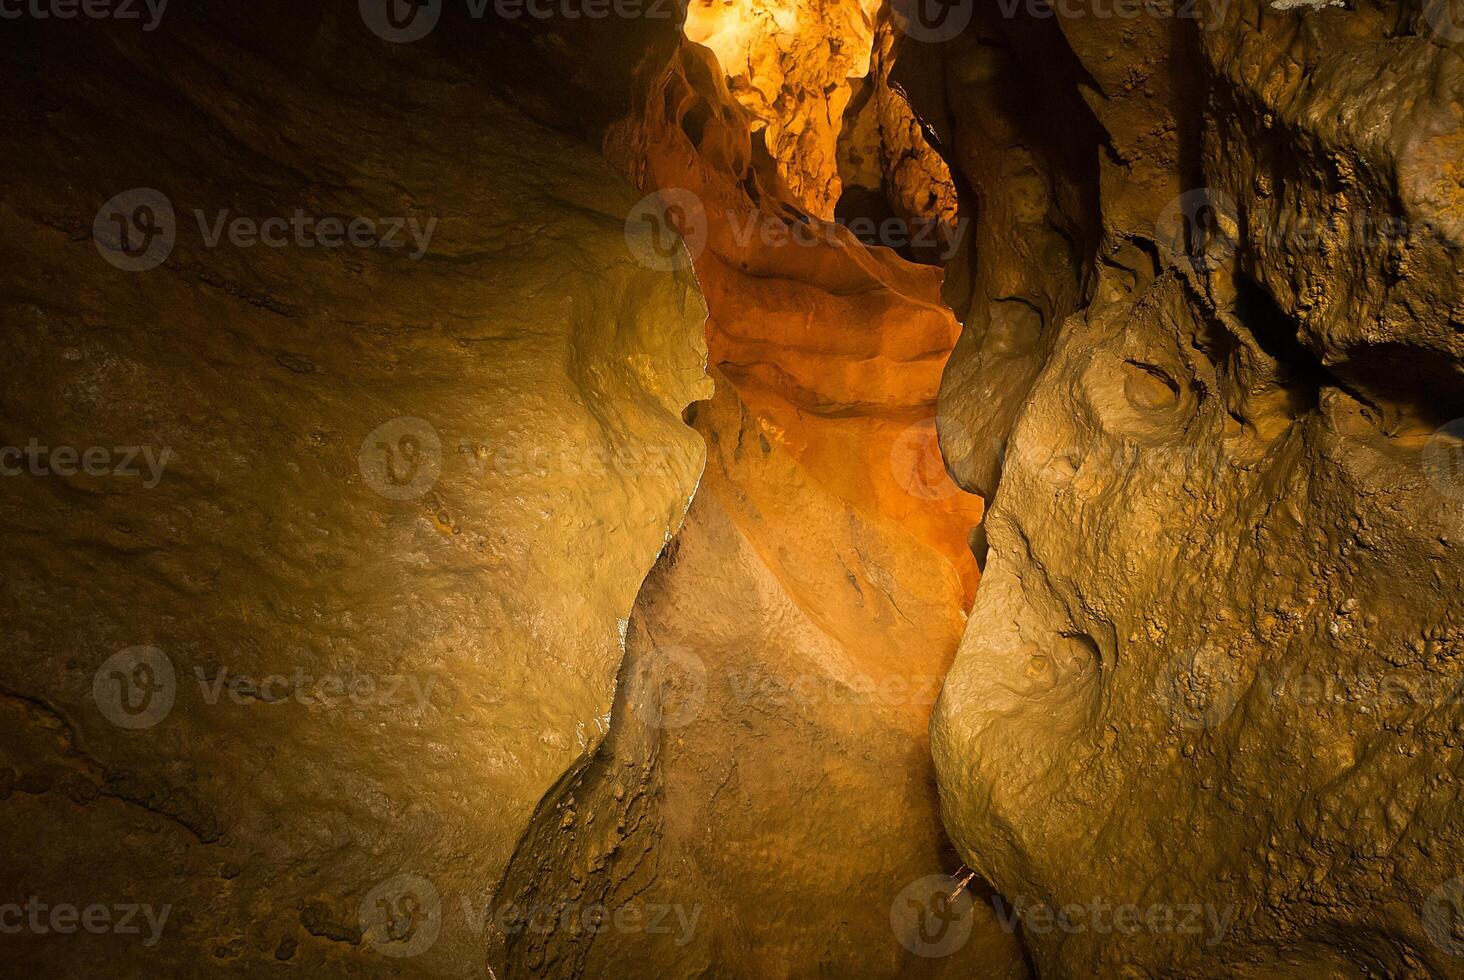 natt fotografi i grottor med blinkar foto